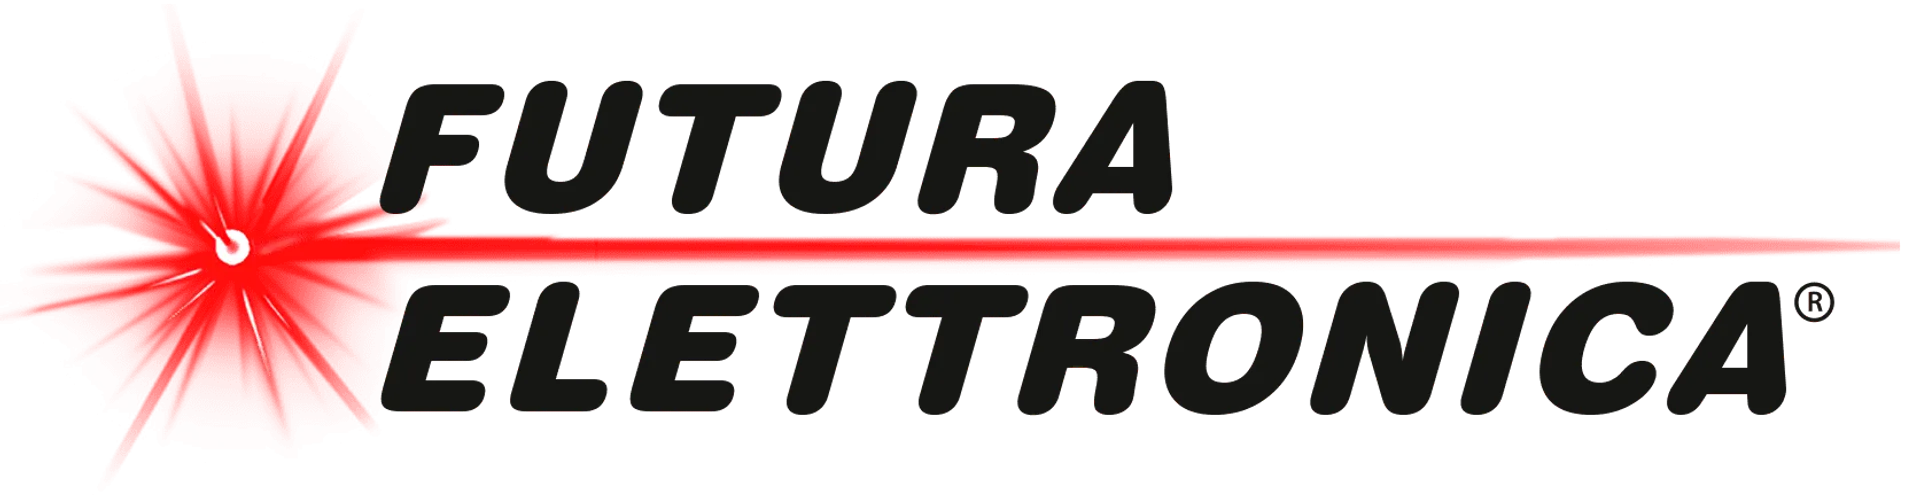 FUTURA ELETTRONICA logo del volantino attuale